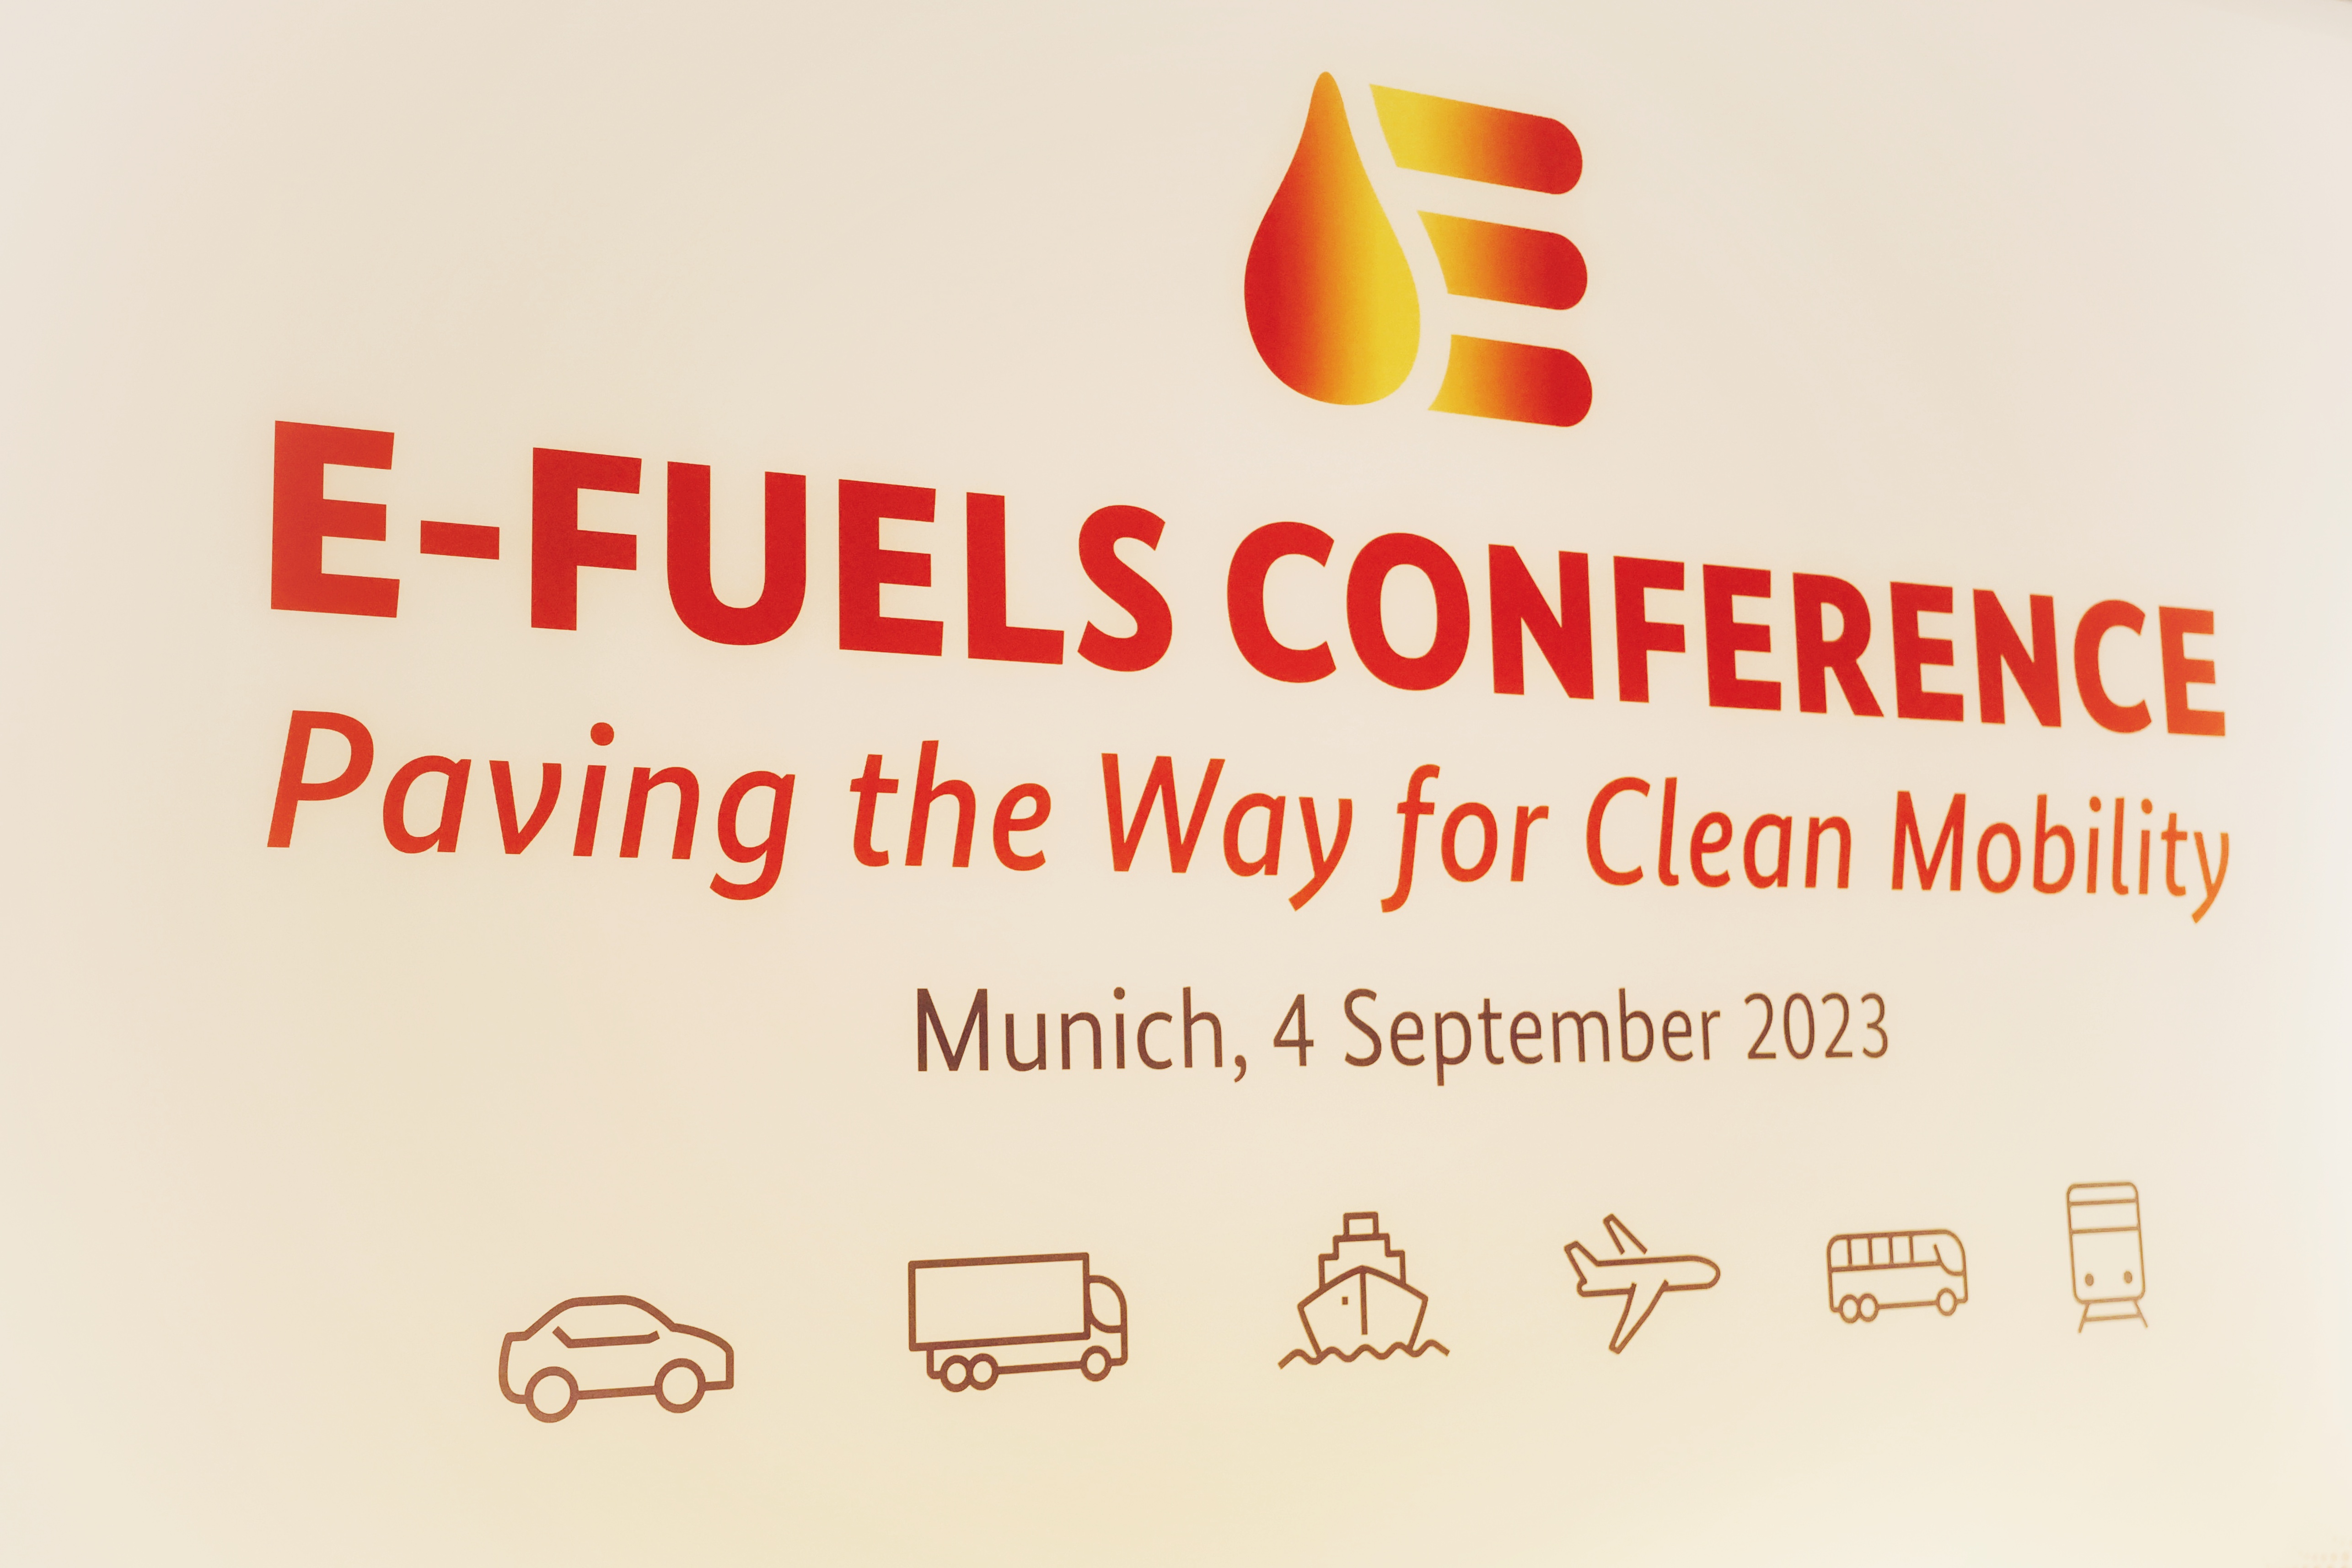 Ministr Kupka: Syntetická paliva mohou hrát důležitou roli v přechodu k nízkoemisní dopravě